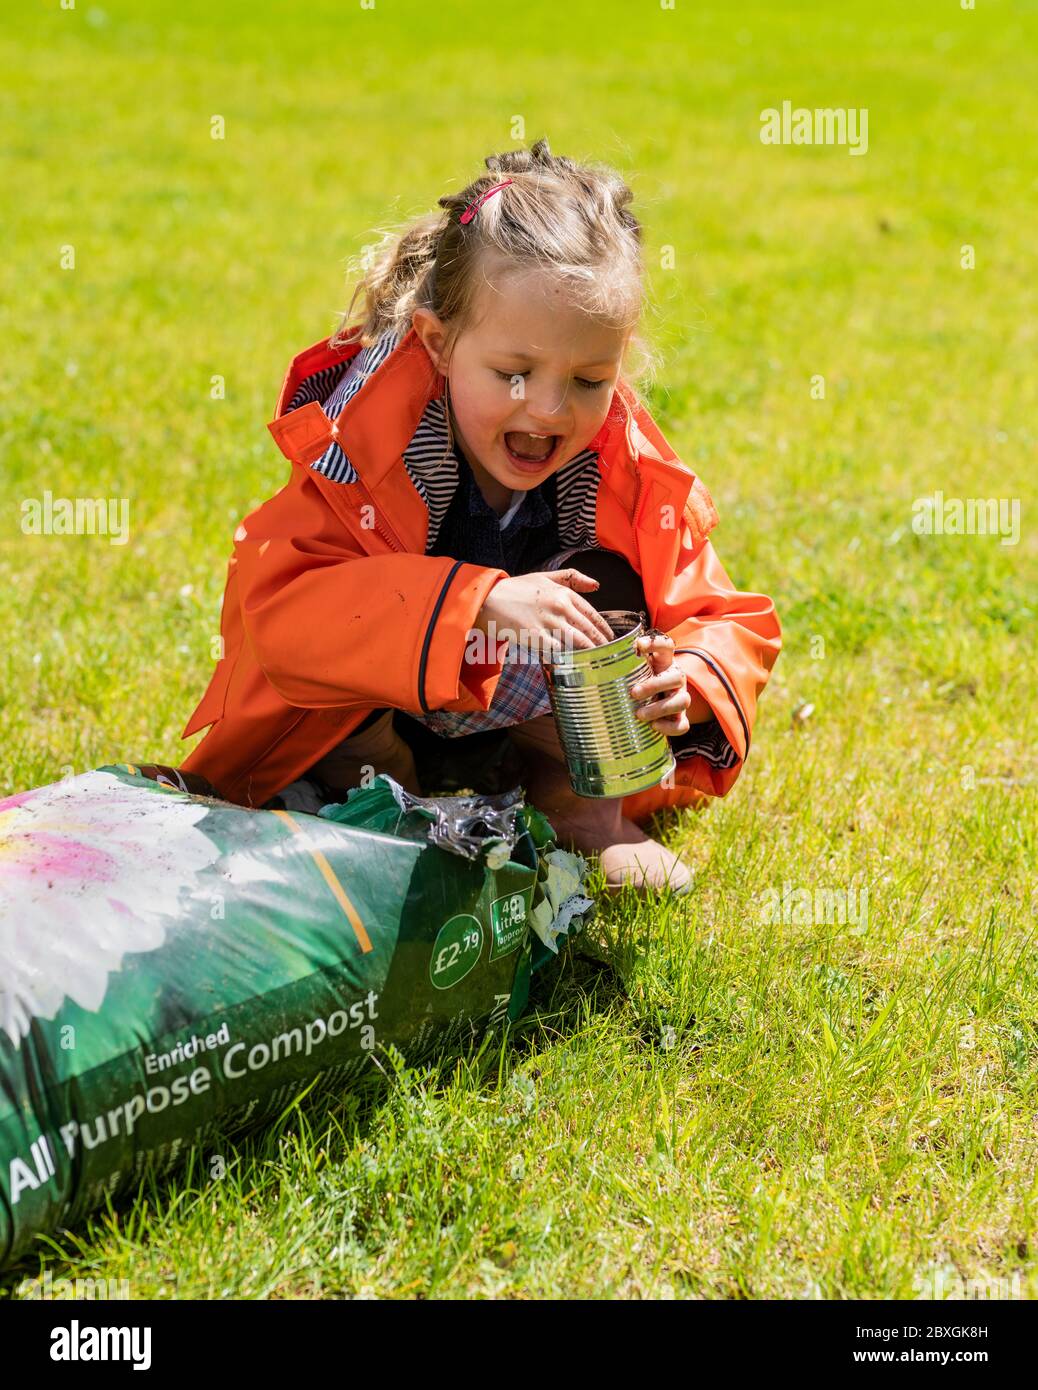 4-jähriges Mädchen Pflanzen und Gartenarbeit, Gurkenpflanzen Pflanzen, tragen orange / lila Regenmantel, sonnigen Tag, Vorschulkinder hilft im Garten Stockfoto